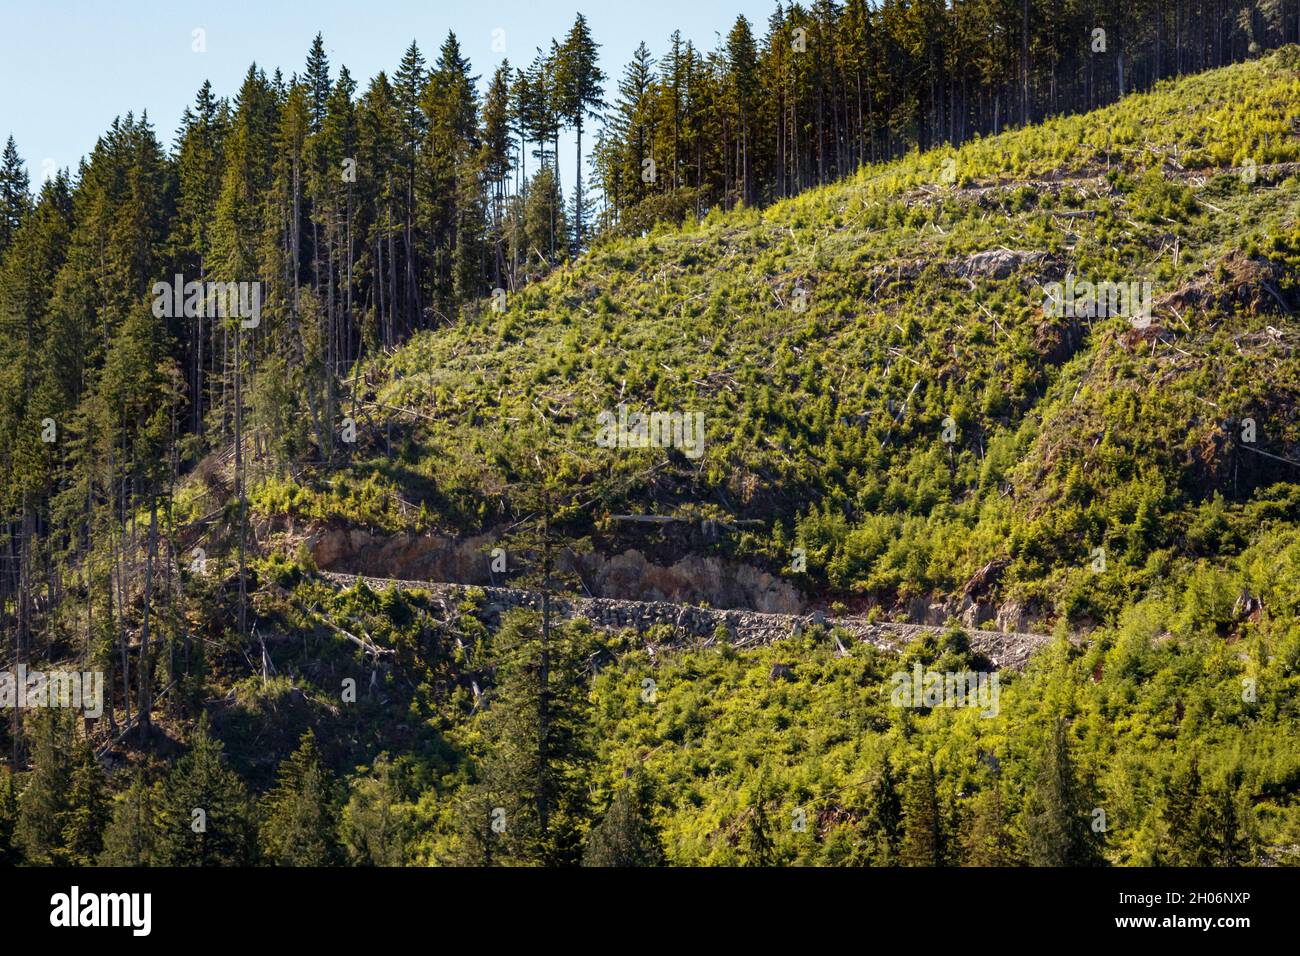 Une route forestière traverse une pente abrupte qui a été taillée à blanc et qui est maintenant en voie de verdir après la plantation, sur la côte de la Colombie-Britannique. Banque D'Images